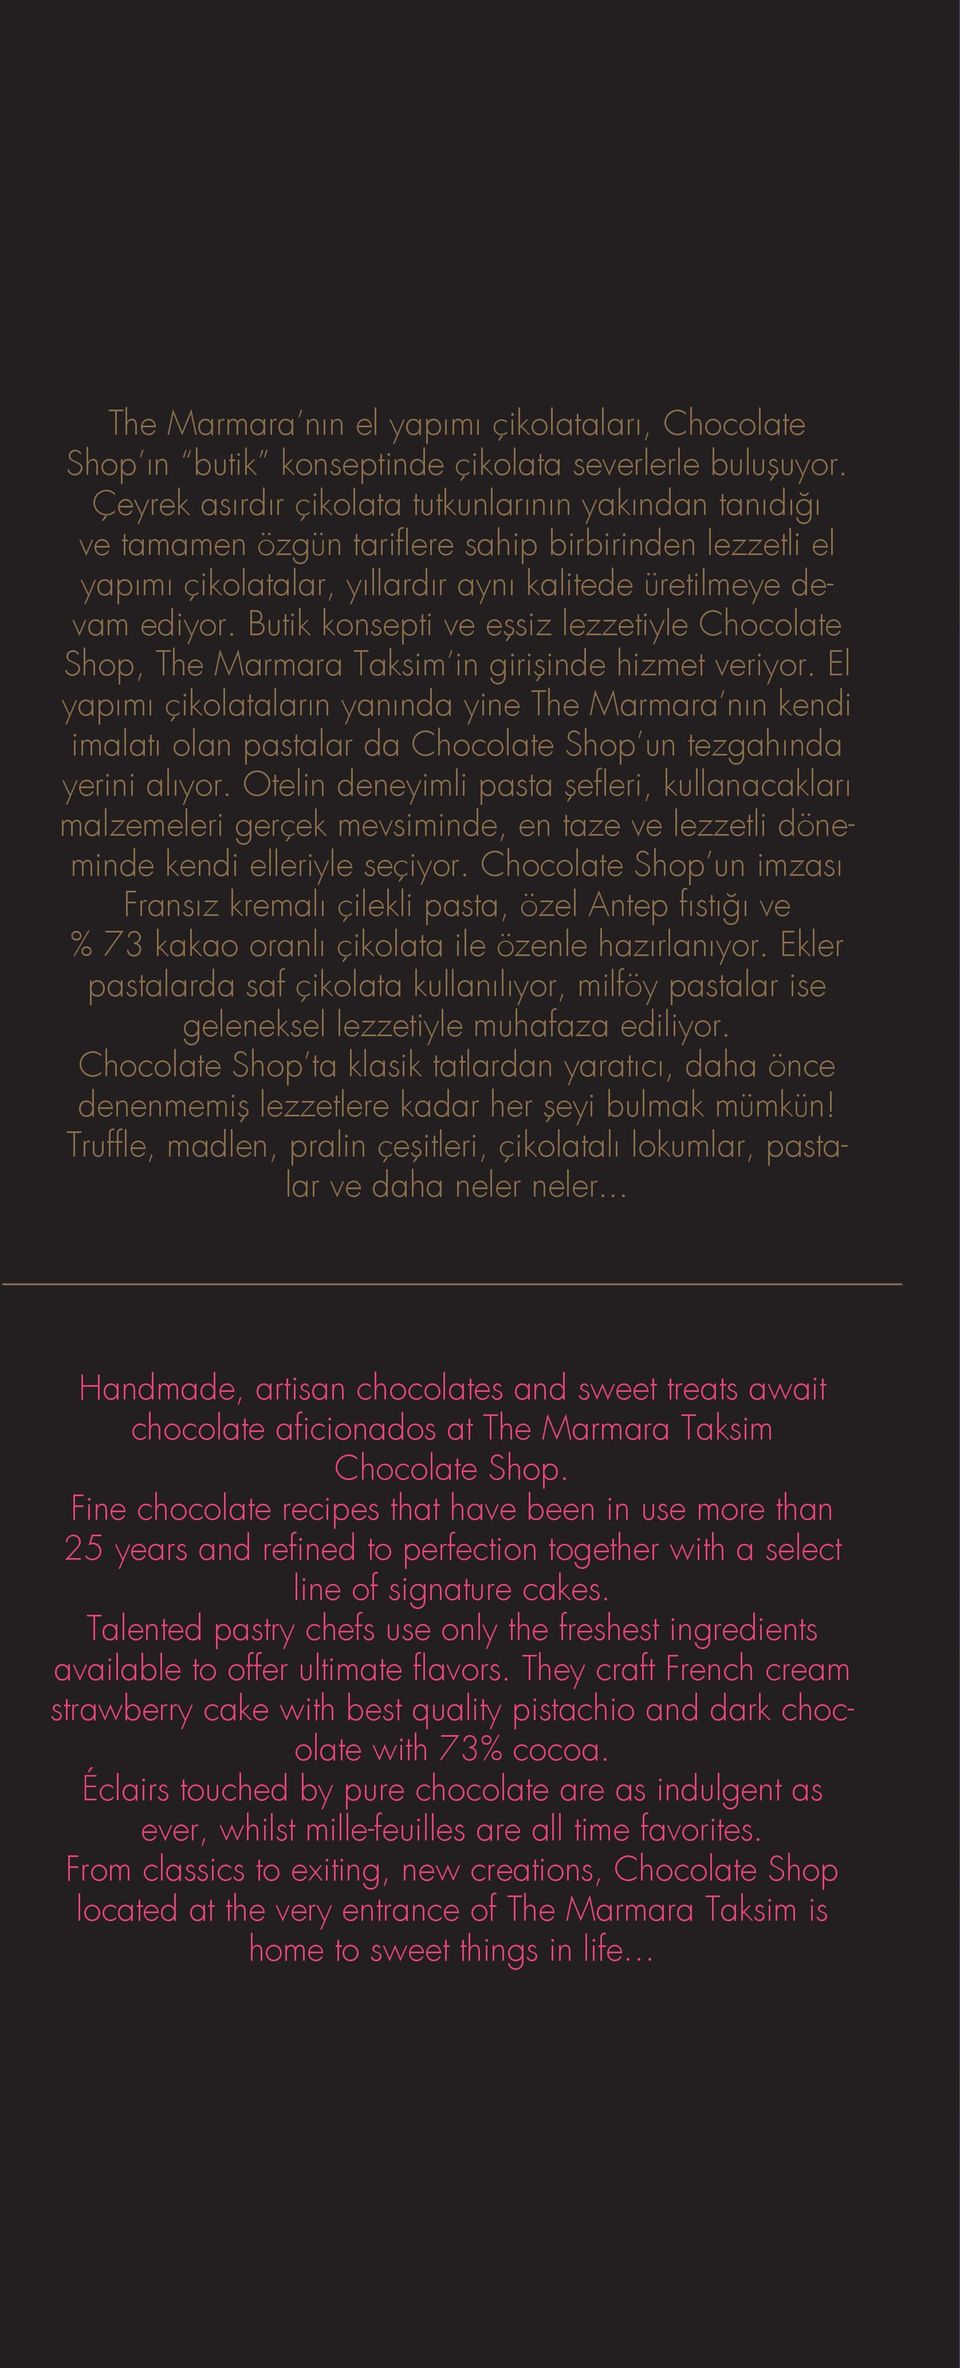 Butik konsepti ve eşsiz lezzetiyle Chocolate Shop, The Marmara Taksim in girişinde hizmet veriyor.